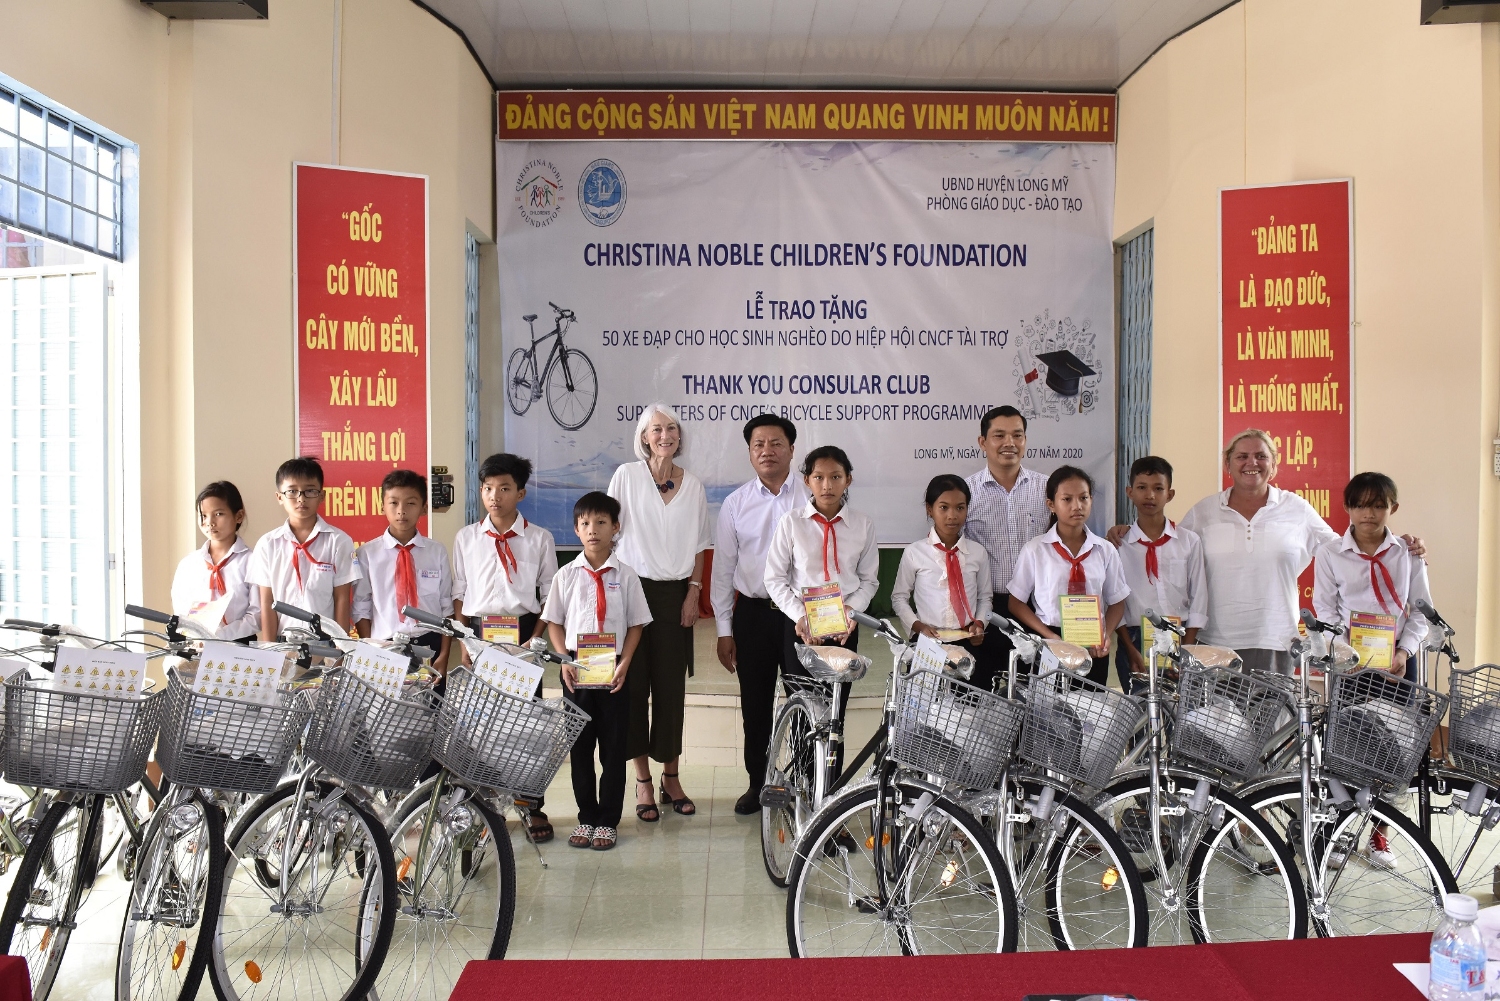 Lễ trao tặng xe đạp cho học sinh nghèo huyện Long Mỹ do Tổ chức CNCF/Anh  tài trợ.